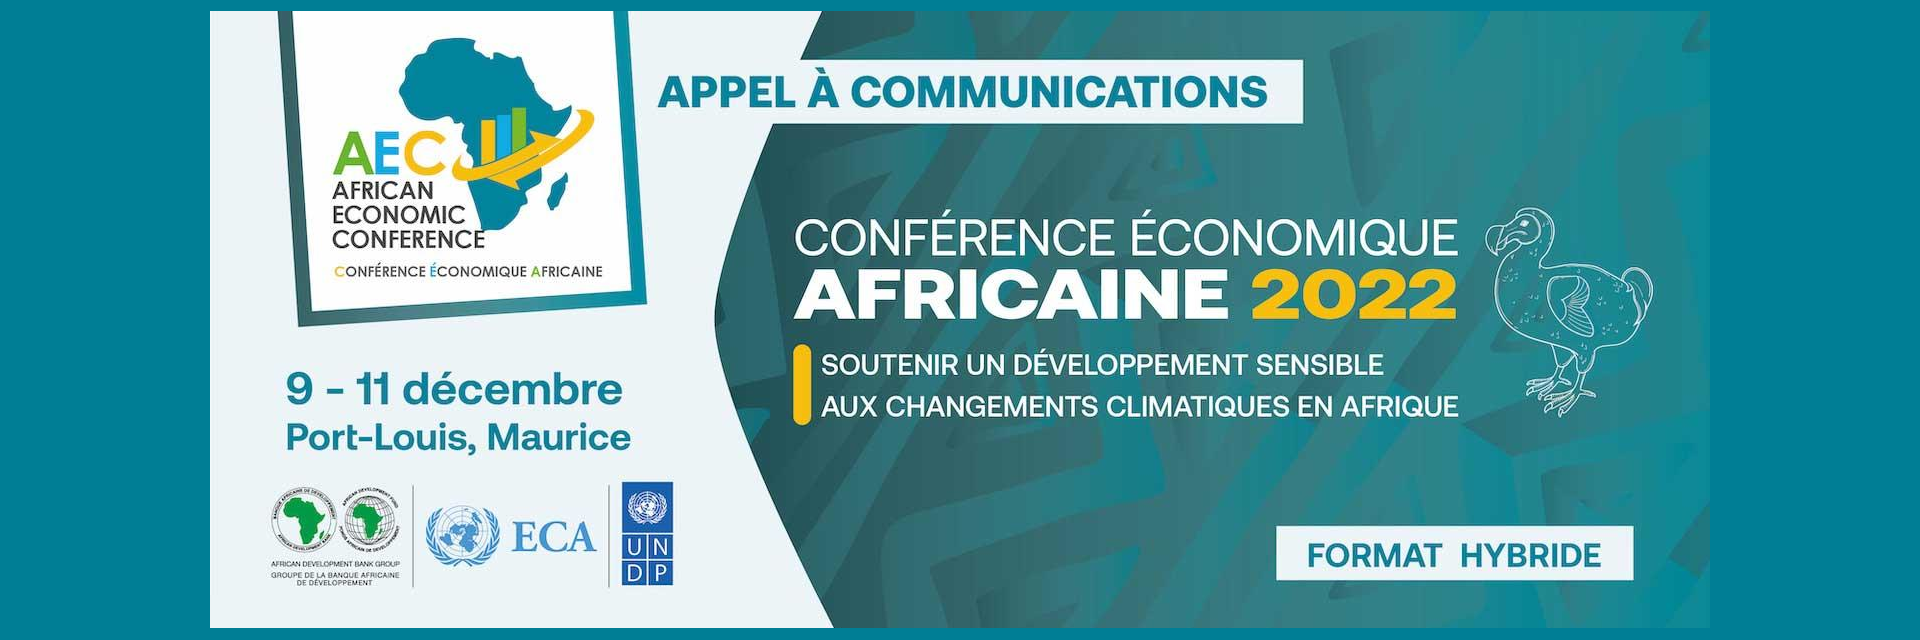 Conférence économique africaine : appel à contributions